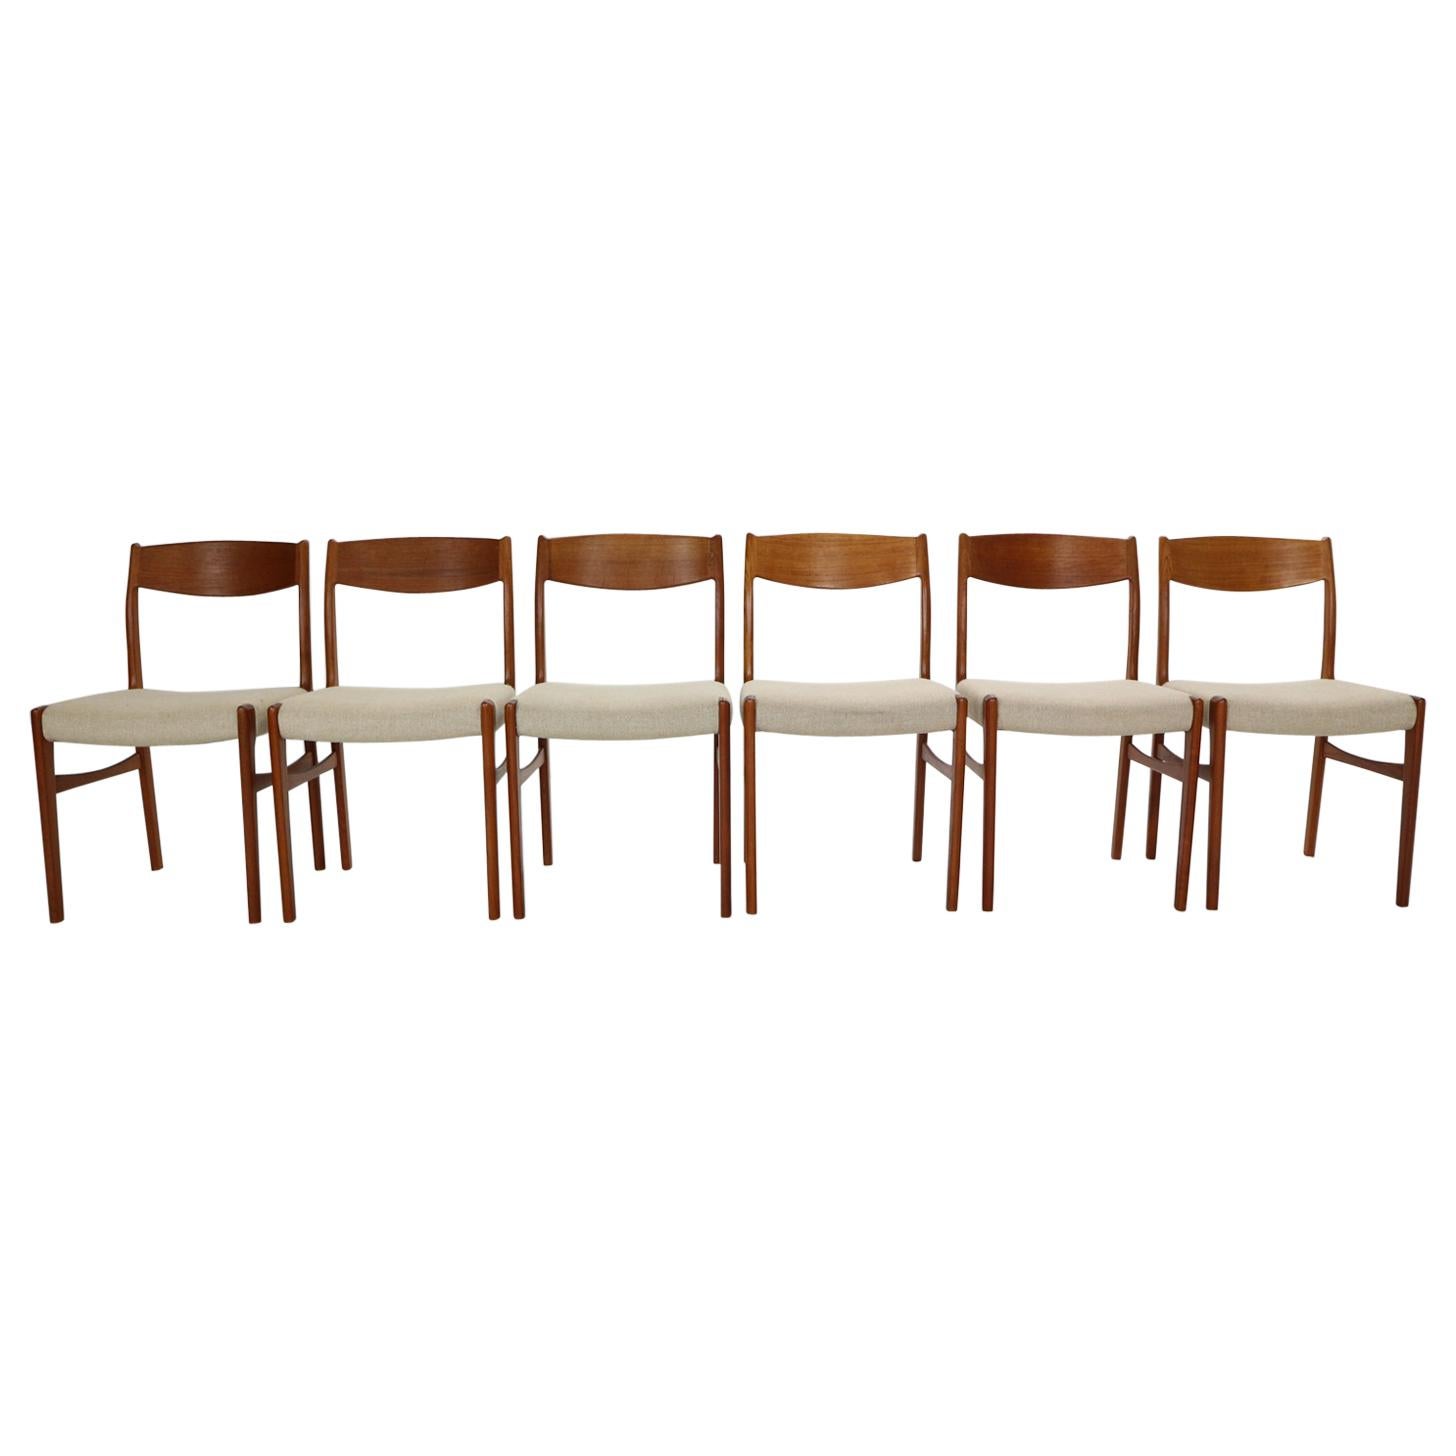 G. S. Glyngore Stolefabrik Set of 6 Teak Dinning Room Chairs, 1960s Denmark